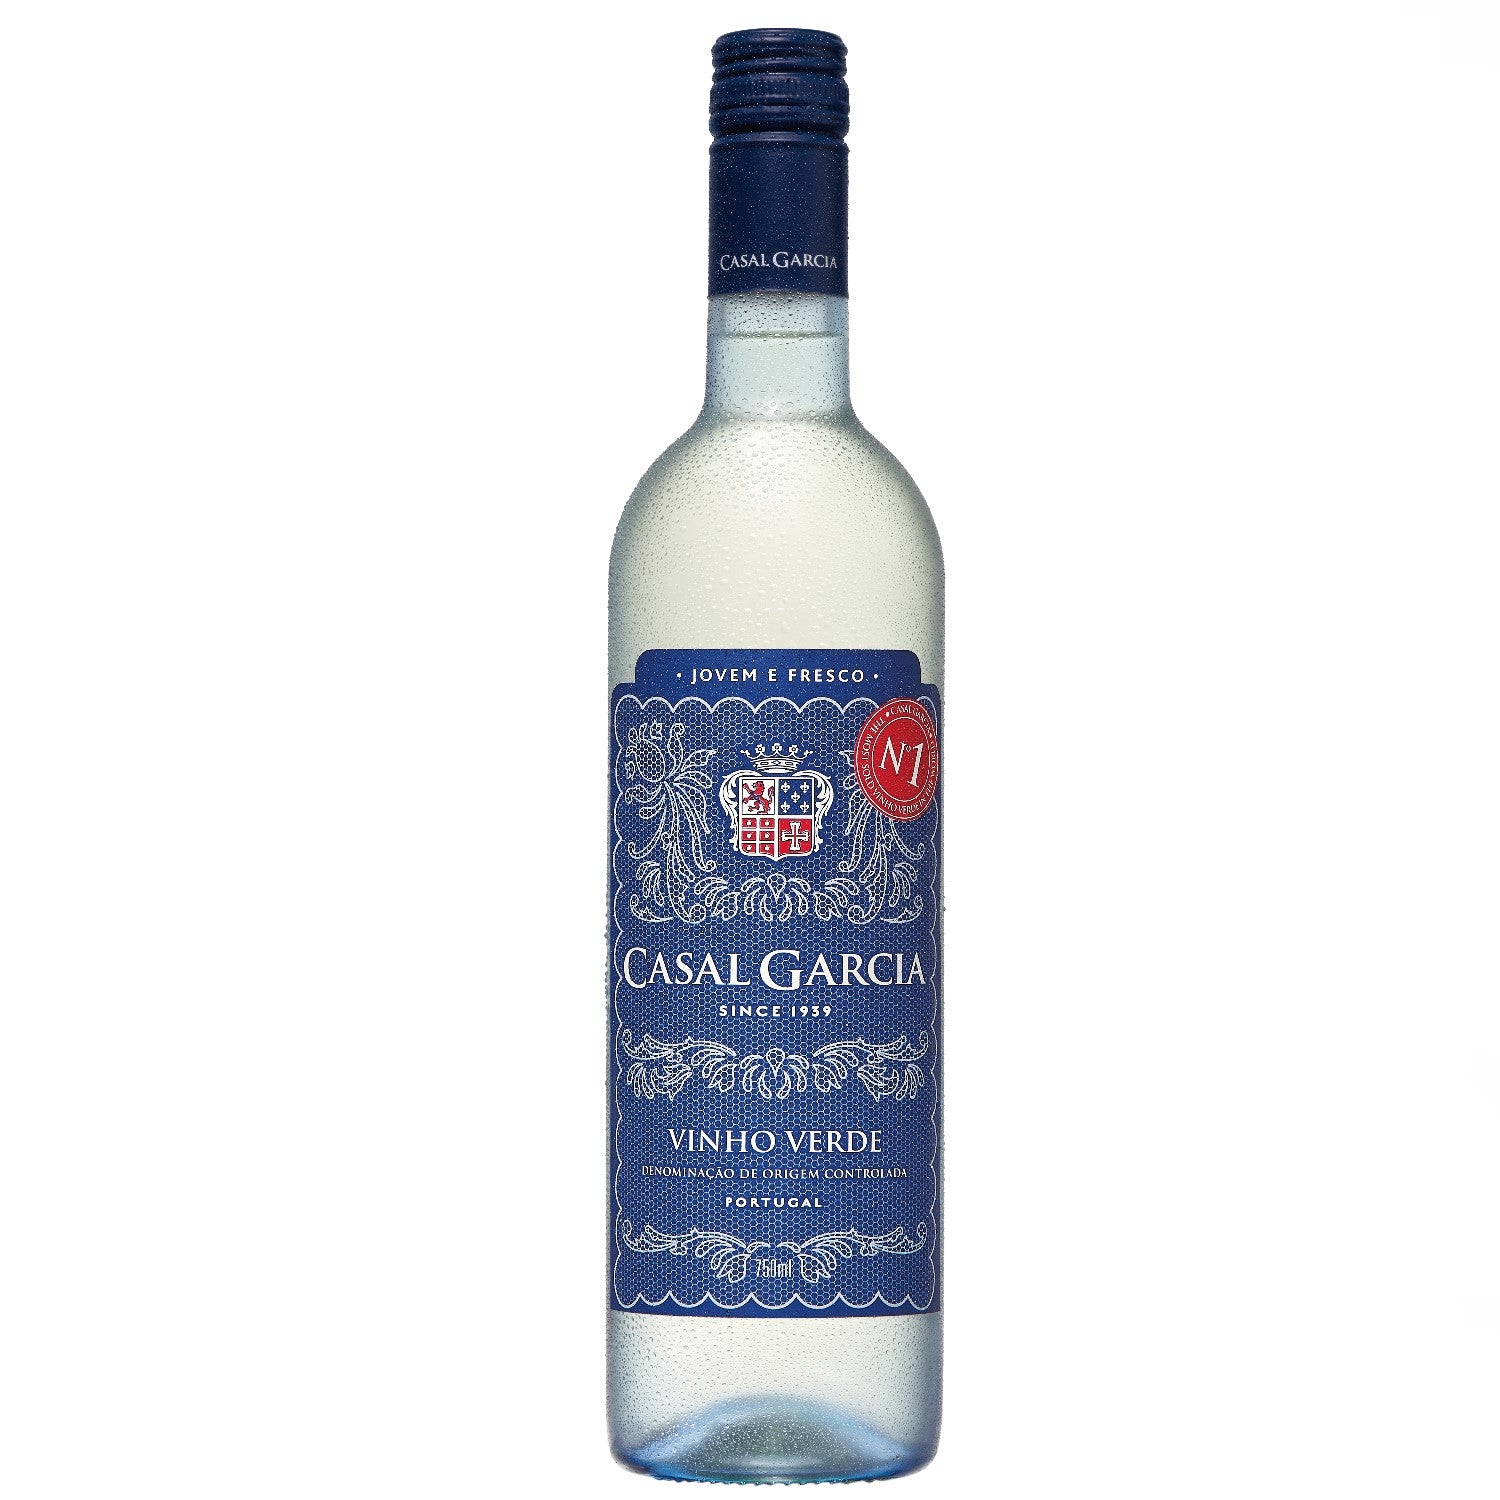 Casal Garcia Vinho Verde Quinta Da Aveleda Trajadura white wine semi-dry Portugal (12 x 0.75l)